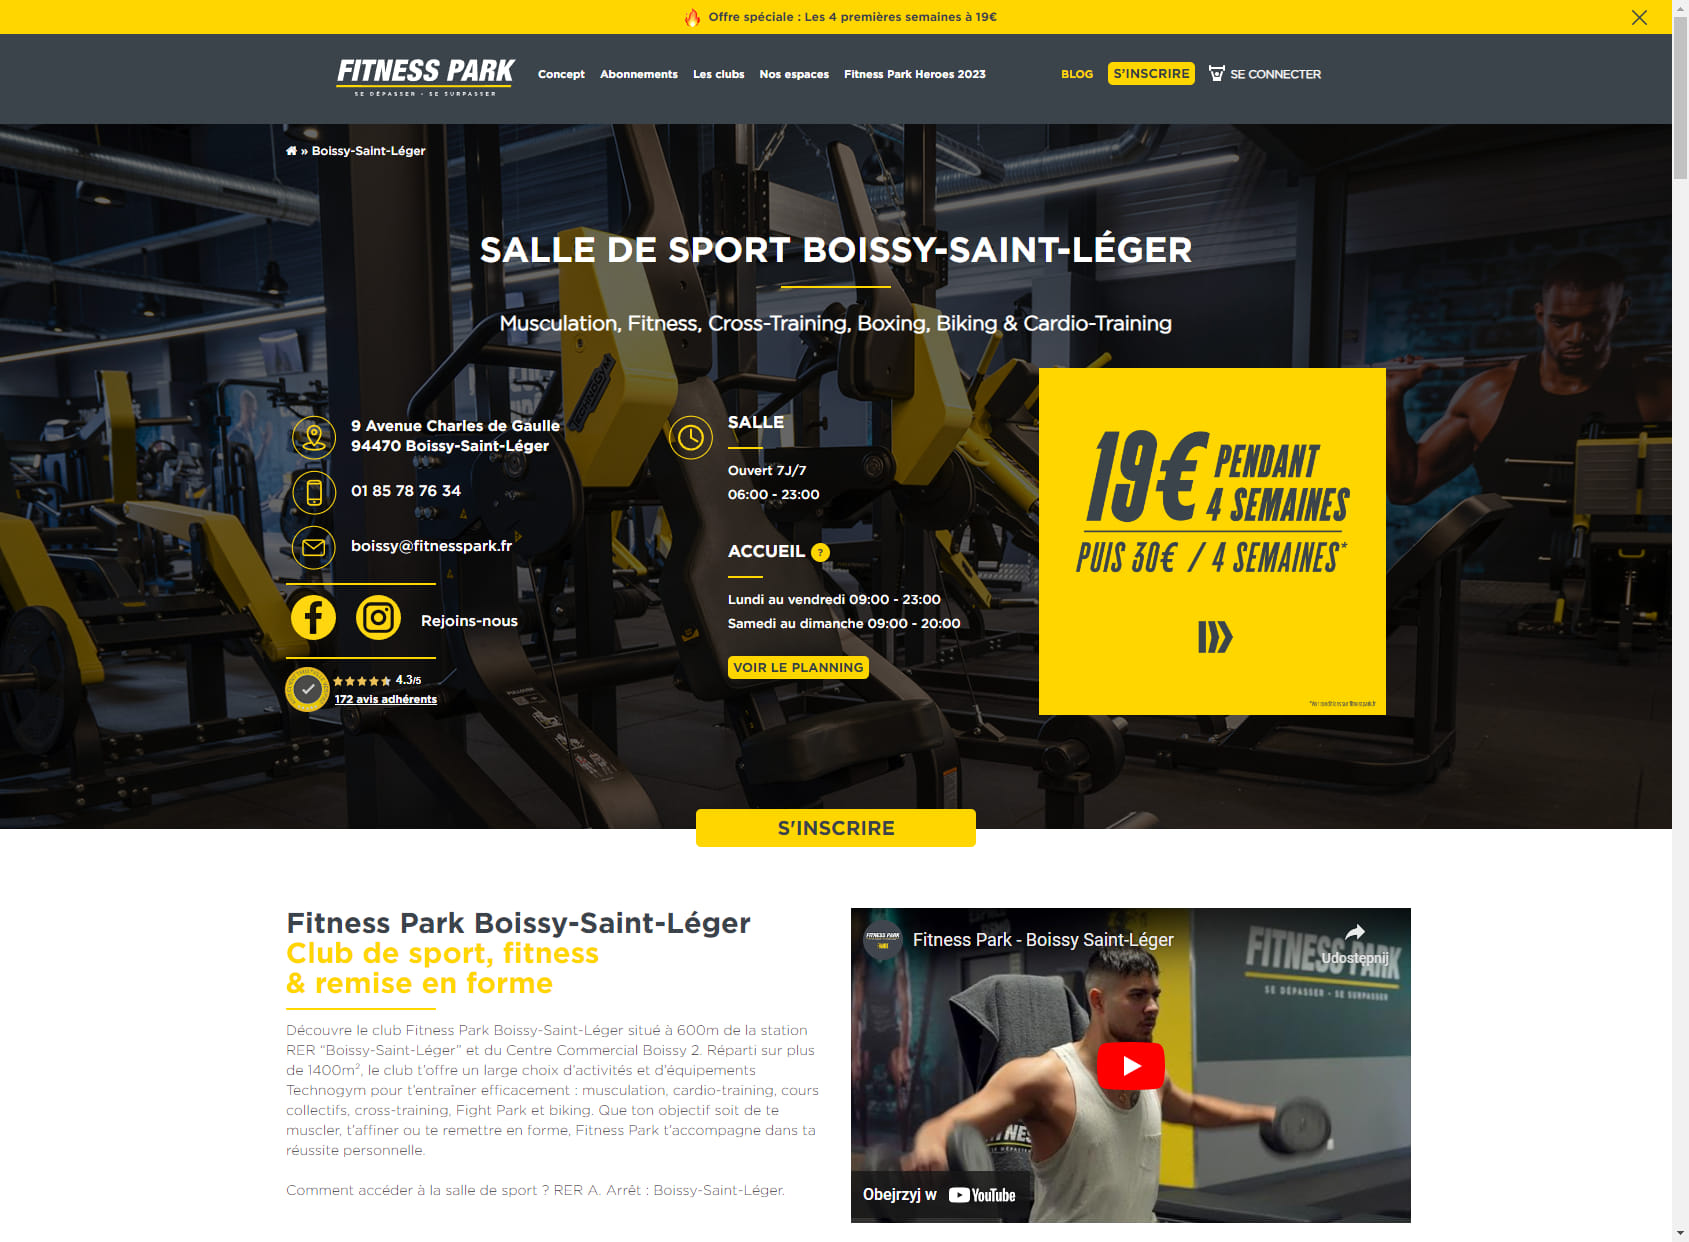 Salle de sport Boissy-Saint-Léger - Fitness Park